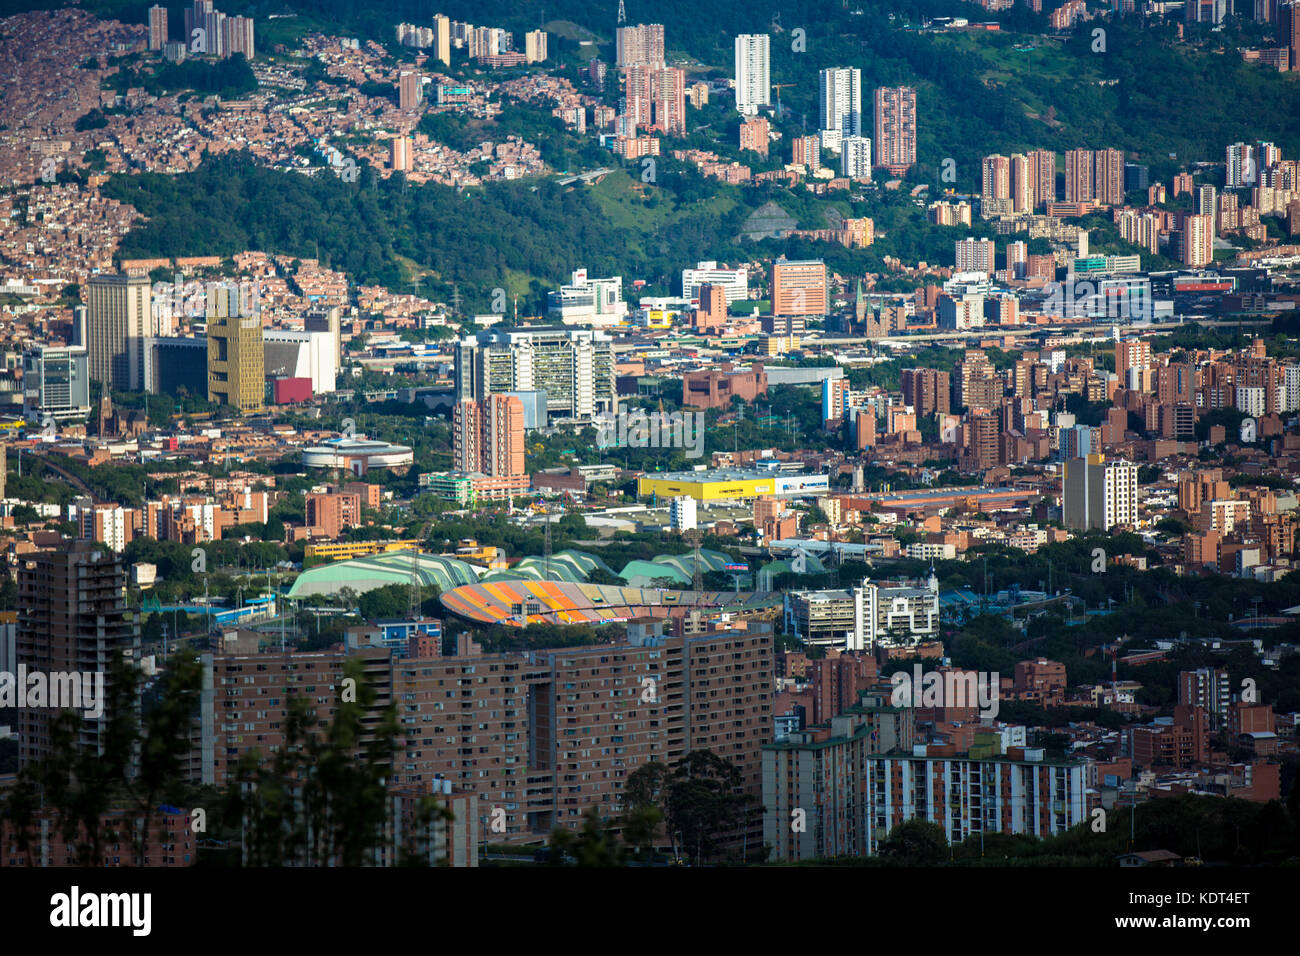 Medellín, Kolumbiens zweitgrößte Stadt mit 3 Millionen Menschen in der Metropolregion, Synonym für städtische Erneuerung geworden. Stockfoto